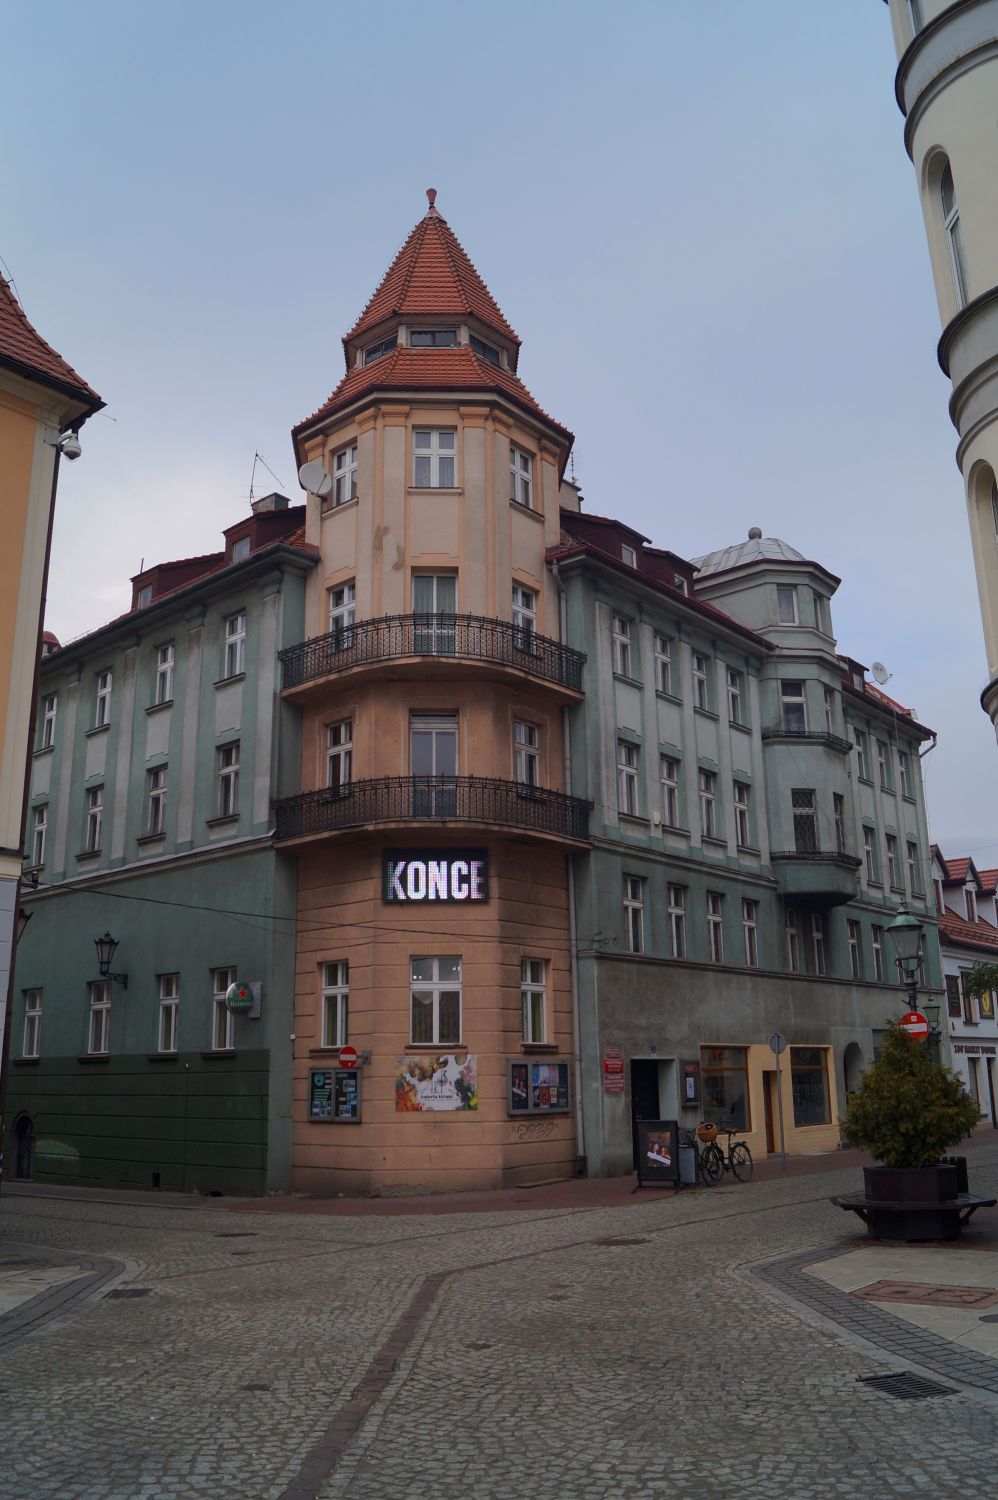 Tu gdzie, obecnie mieści się PCKul istniał kiedyś hotel „Zum Weissen Schwan”, czyli Pod Białym Łabędziem. Na jego miejscu w 1913 r. zbudowano nowy budynek hotelu Plesser-Hof - Pszczyński Dwór, który stoi do dziś. 